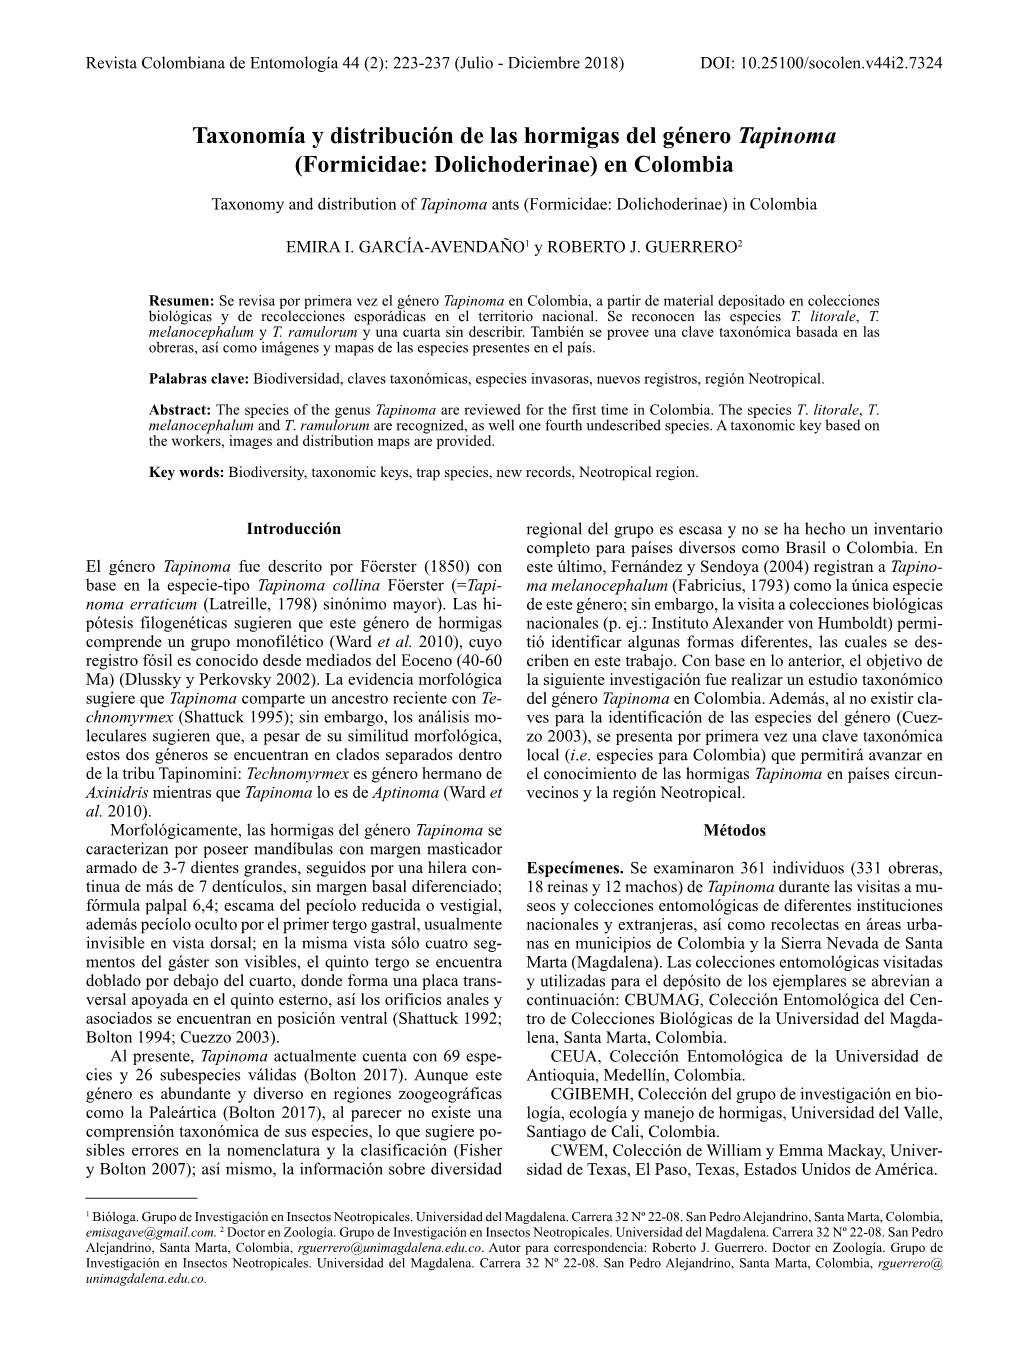 Taxonomía Y Distribución De Las Hormigas Del Género Tapinoma (Formicidae: Dolichoderinae) En Colombia